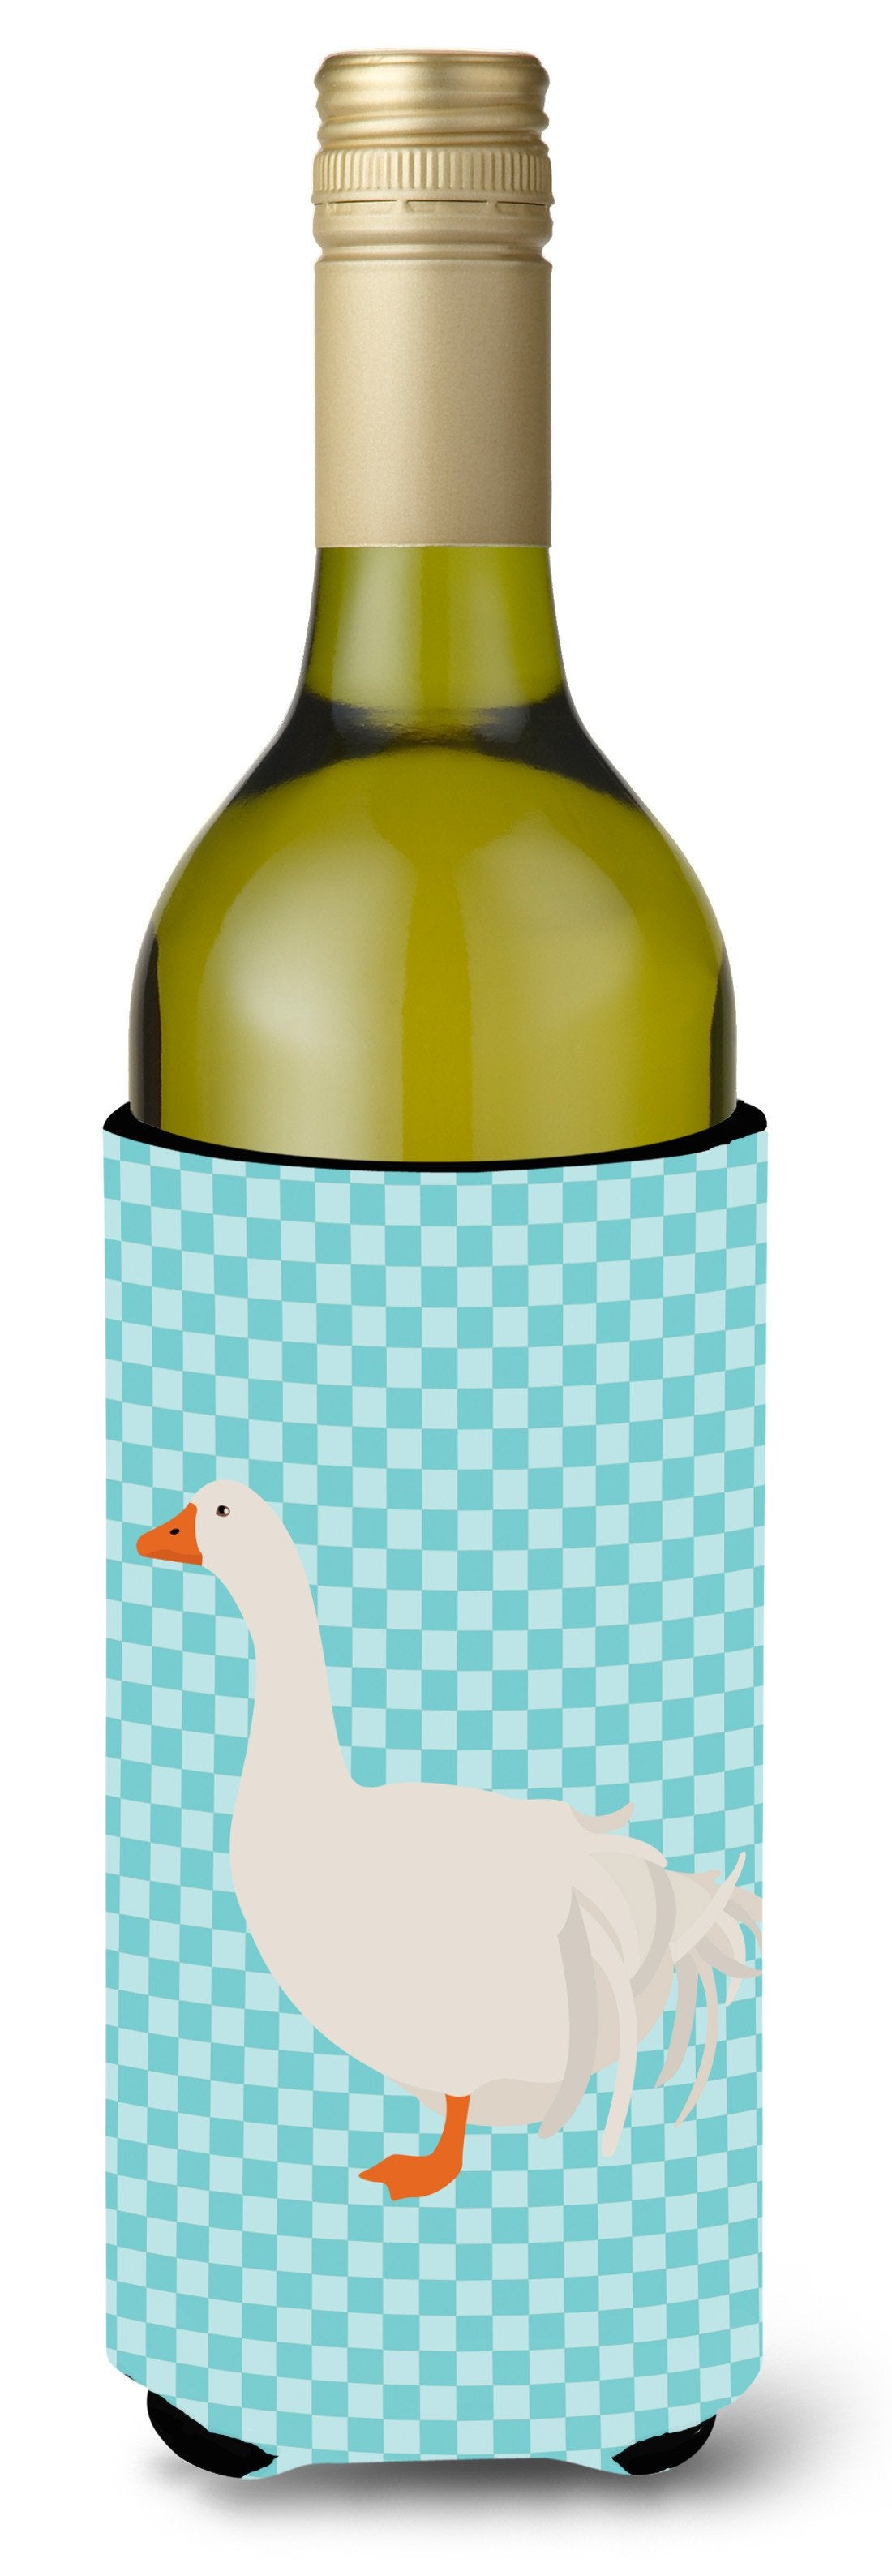 Sebastopol Goose Blue Check Wine Bottle Beverge Insulator Hugger BB8076LITERK by Caroline&#39;s Treasures